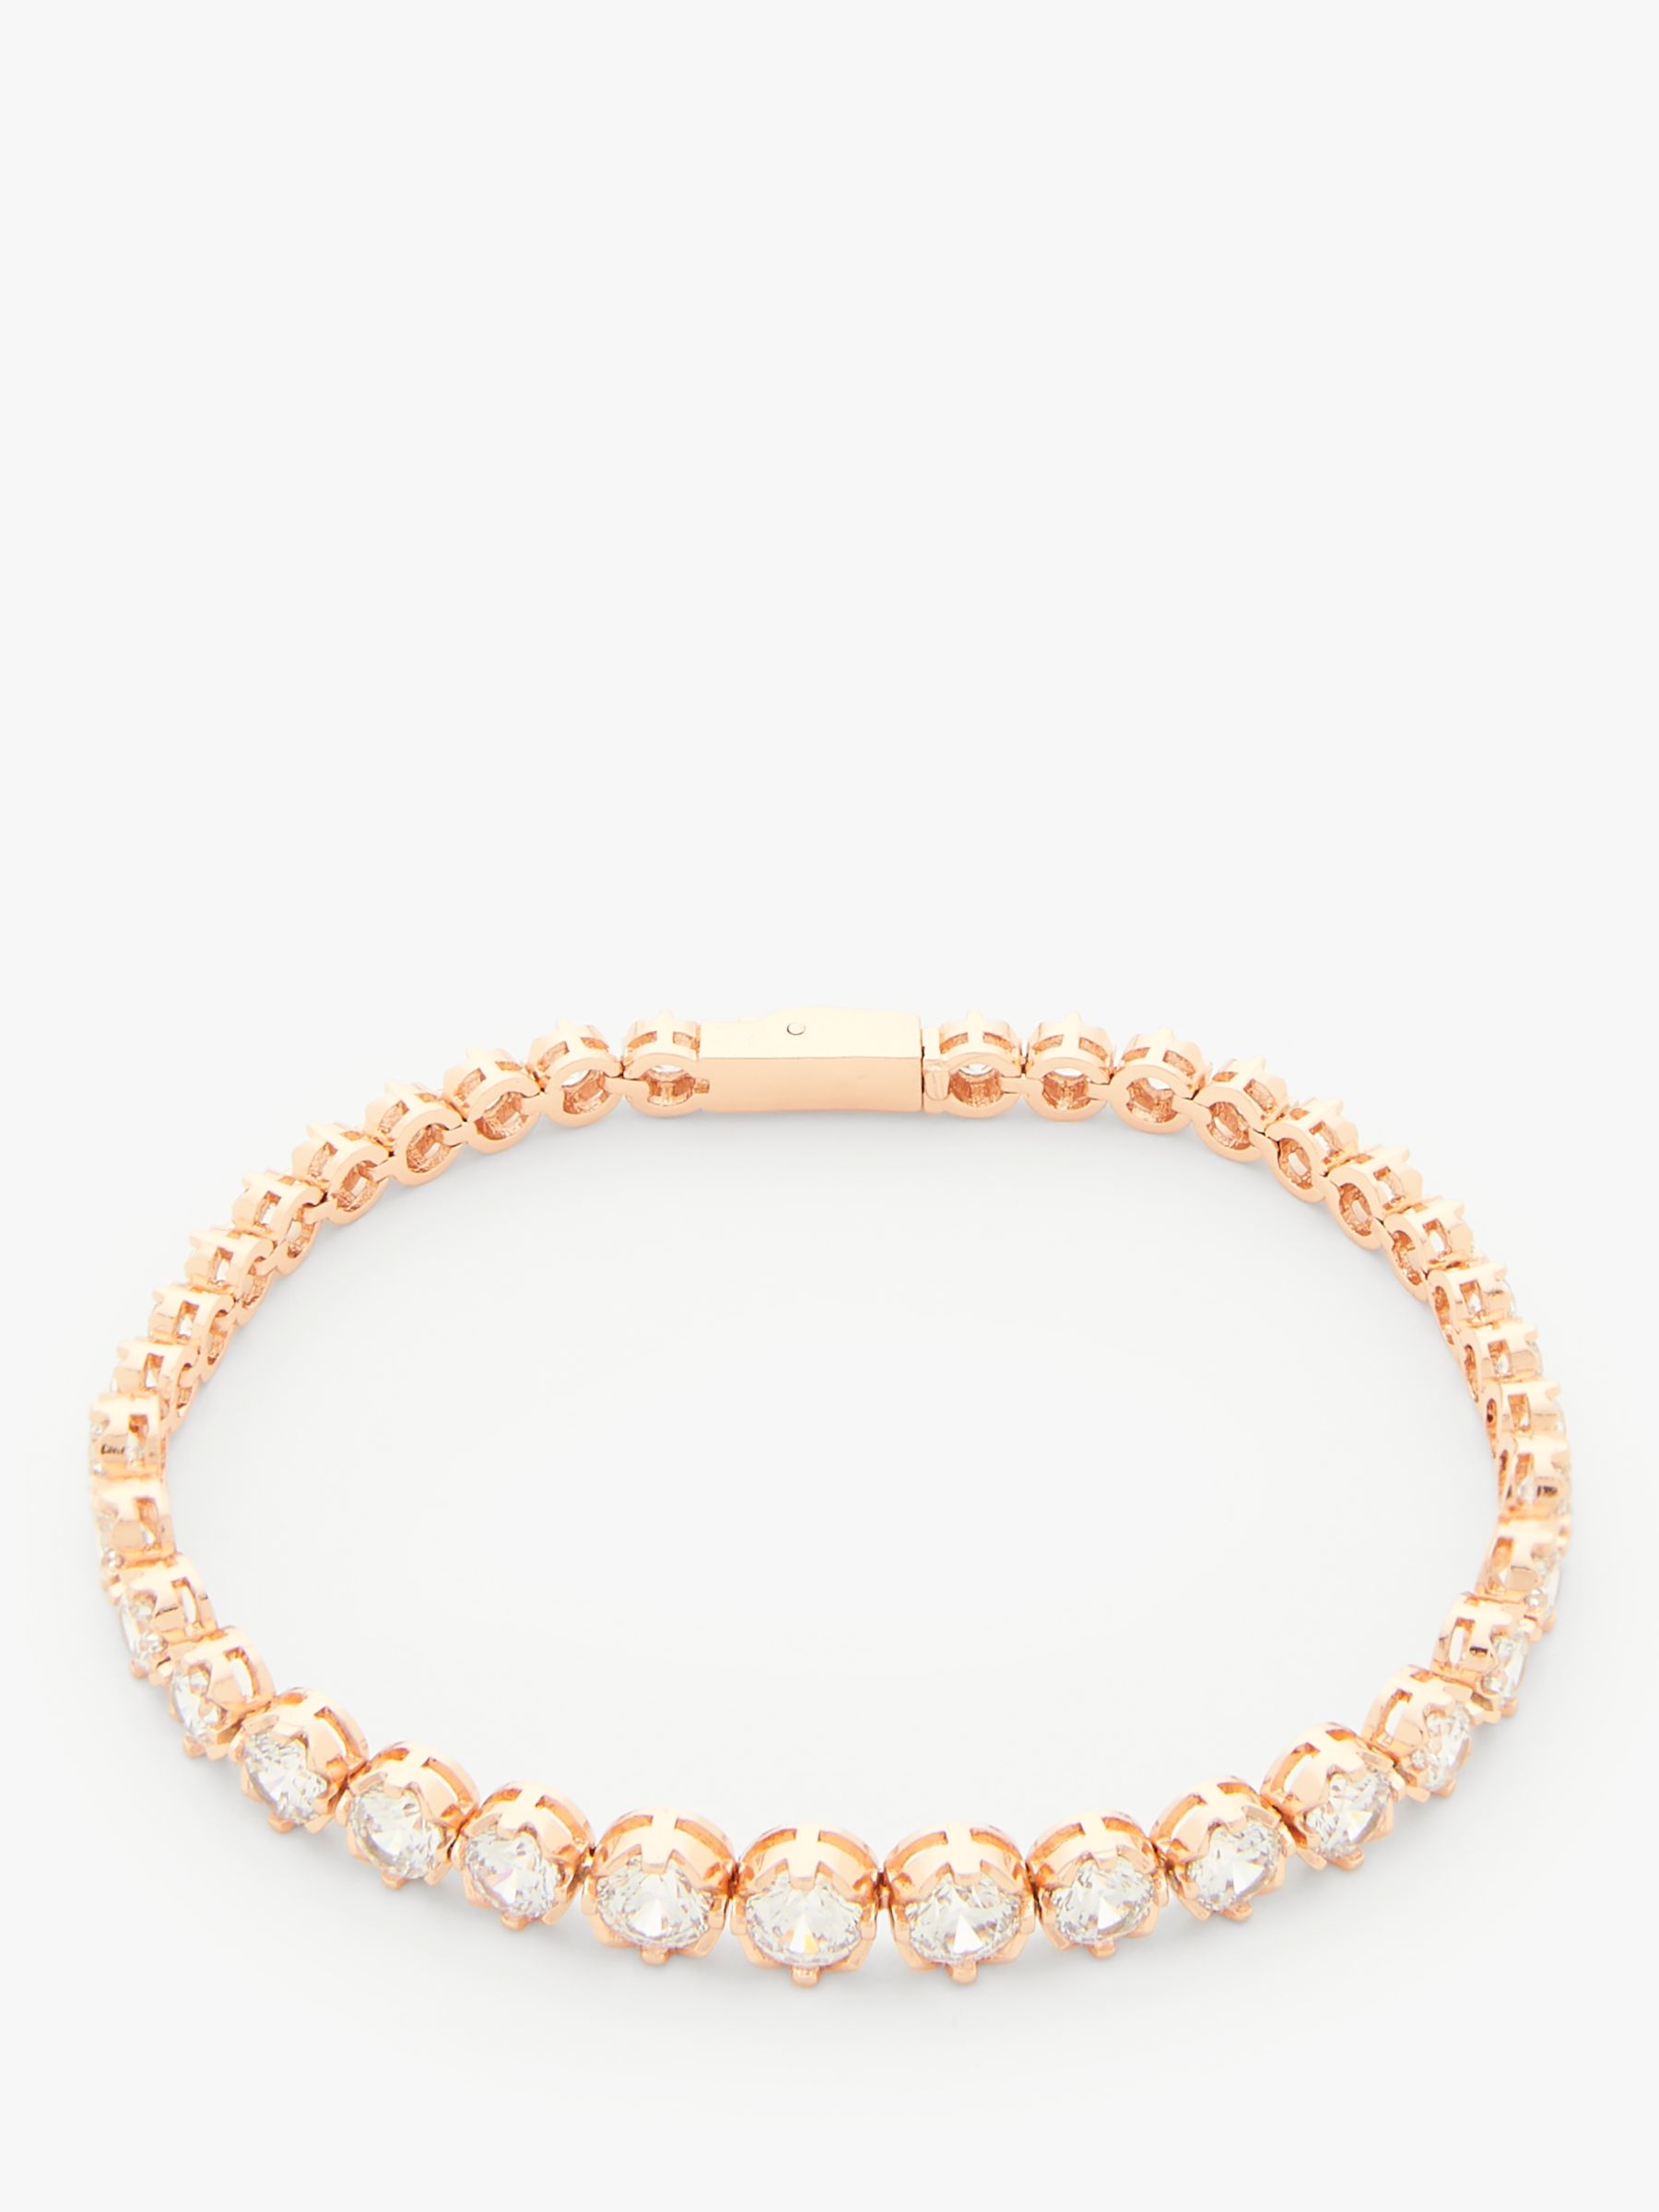 Ivory & Co. Limelight Crystal Tennis Bracelet, Rose Gold